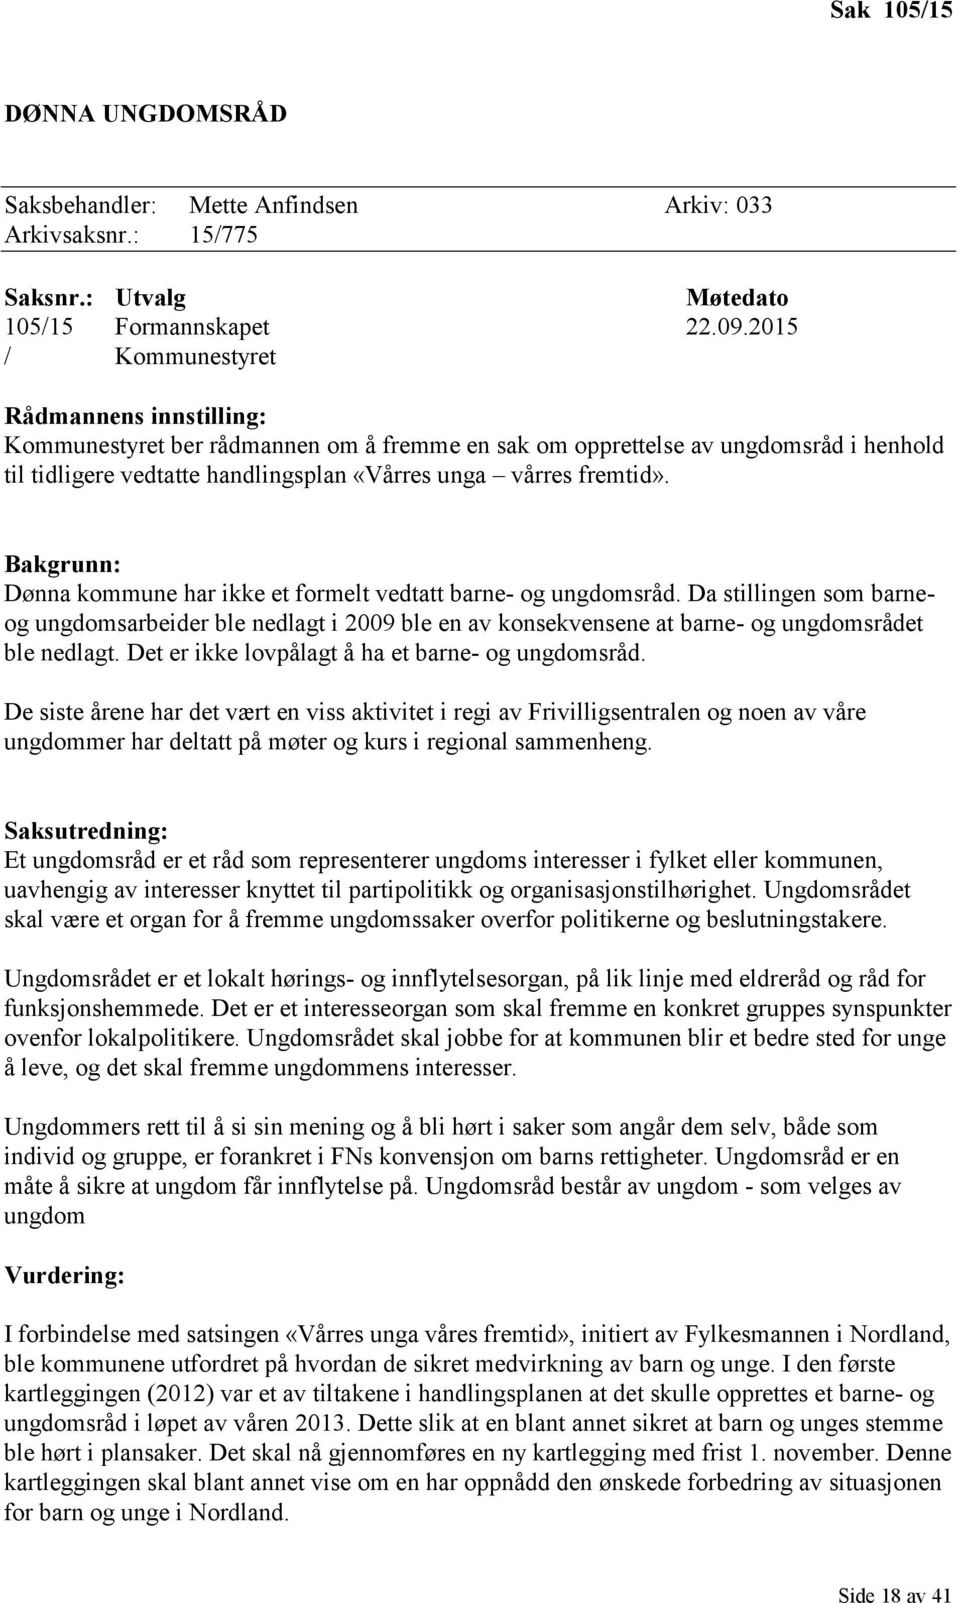 Bakgrunn: Dønna kommune har ikke et formelt vedtatt barne- og ungdomsråd. Da stillingen som barneog ungdomsarbeider ble nedlagt i 2009 ble en av konsekvensene at barne- og ungdomsrådet ble nedlagt.